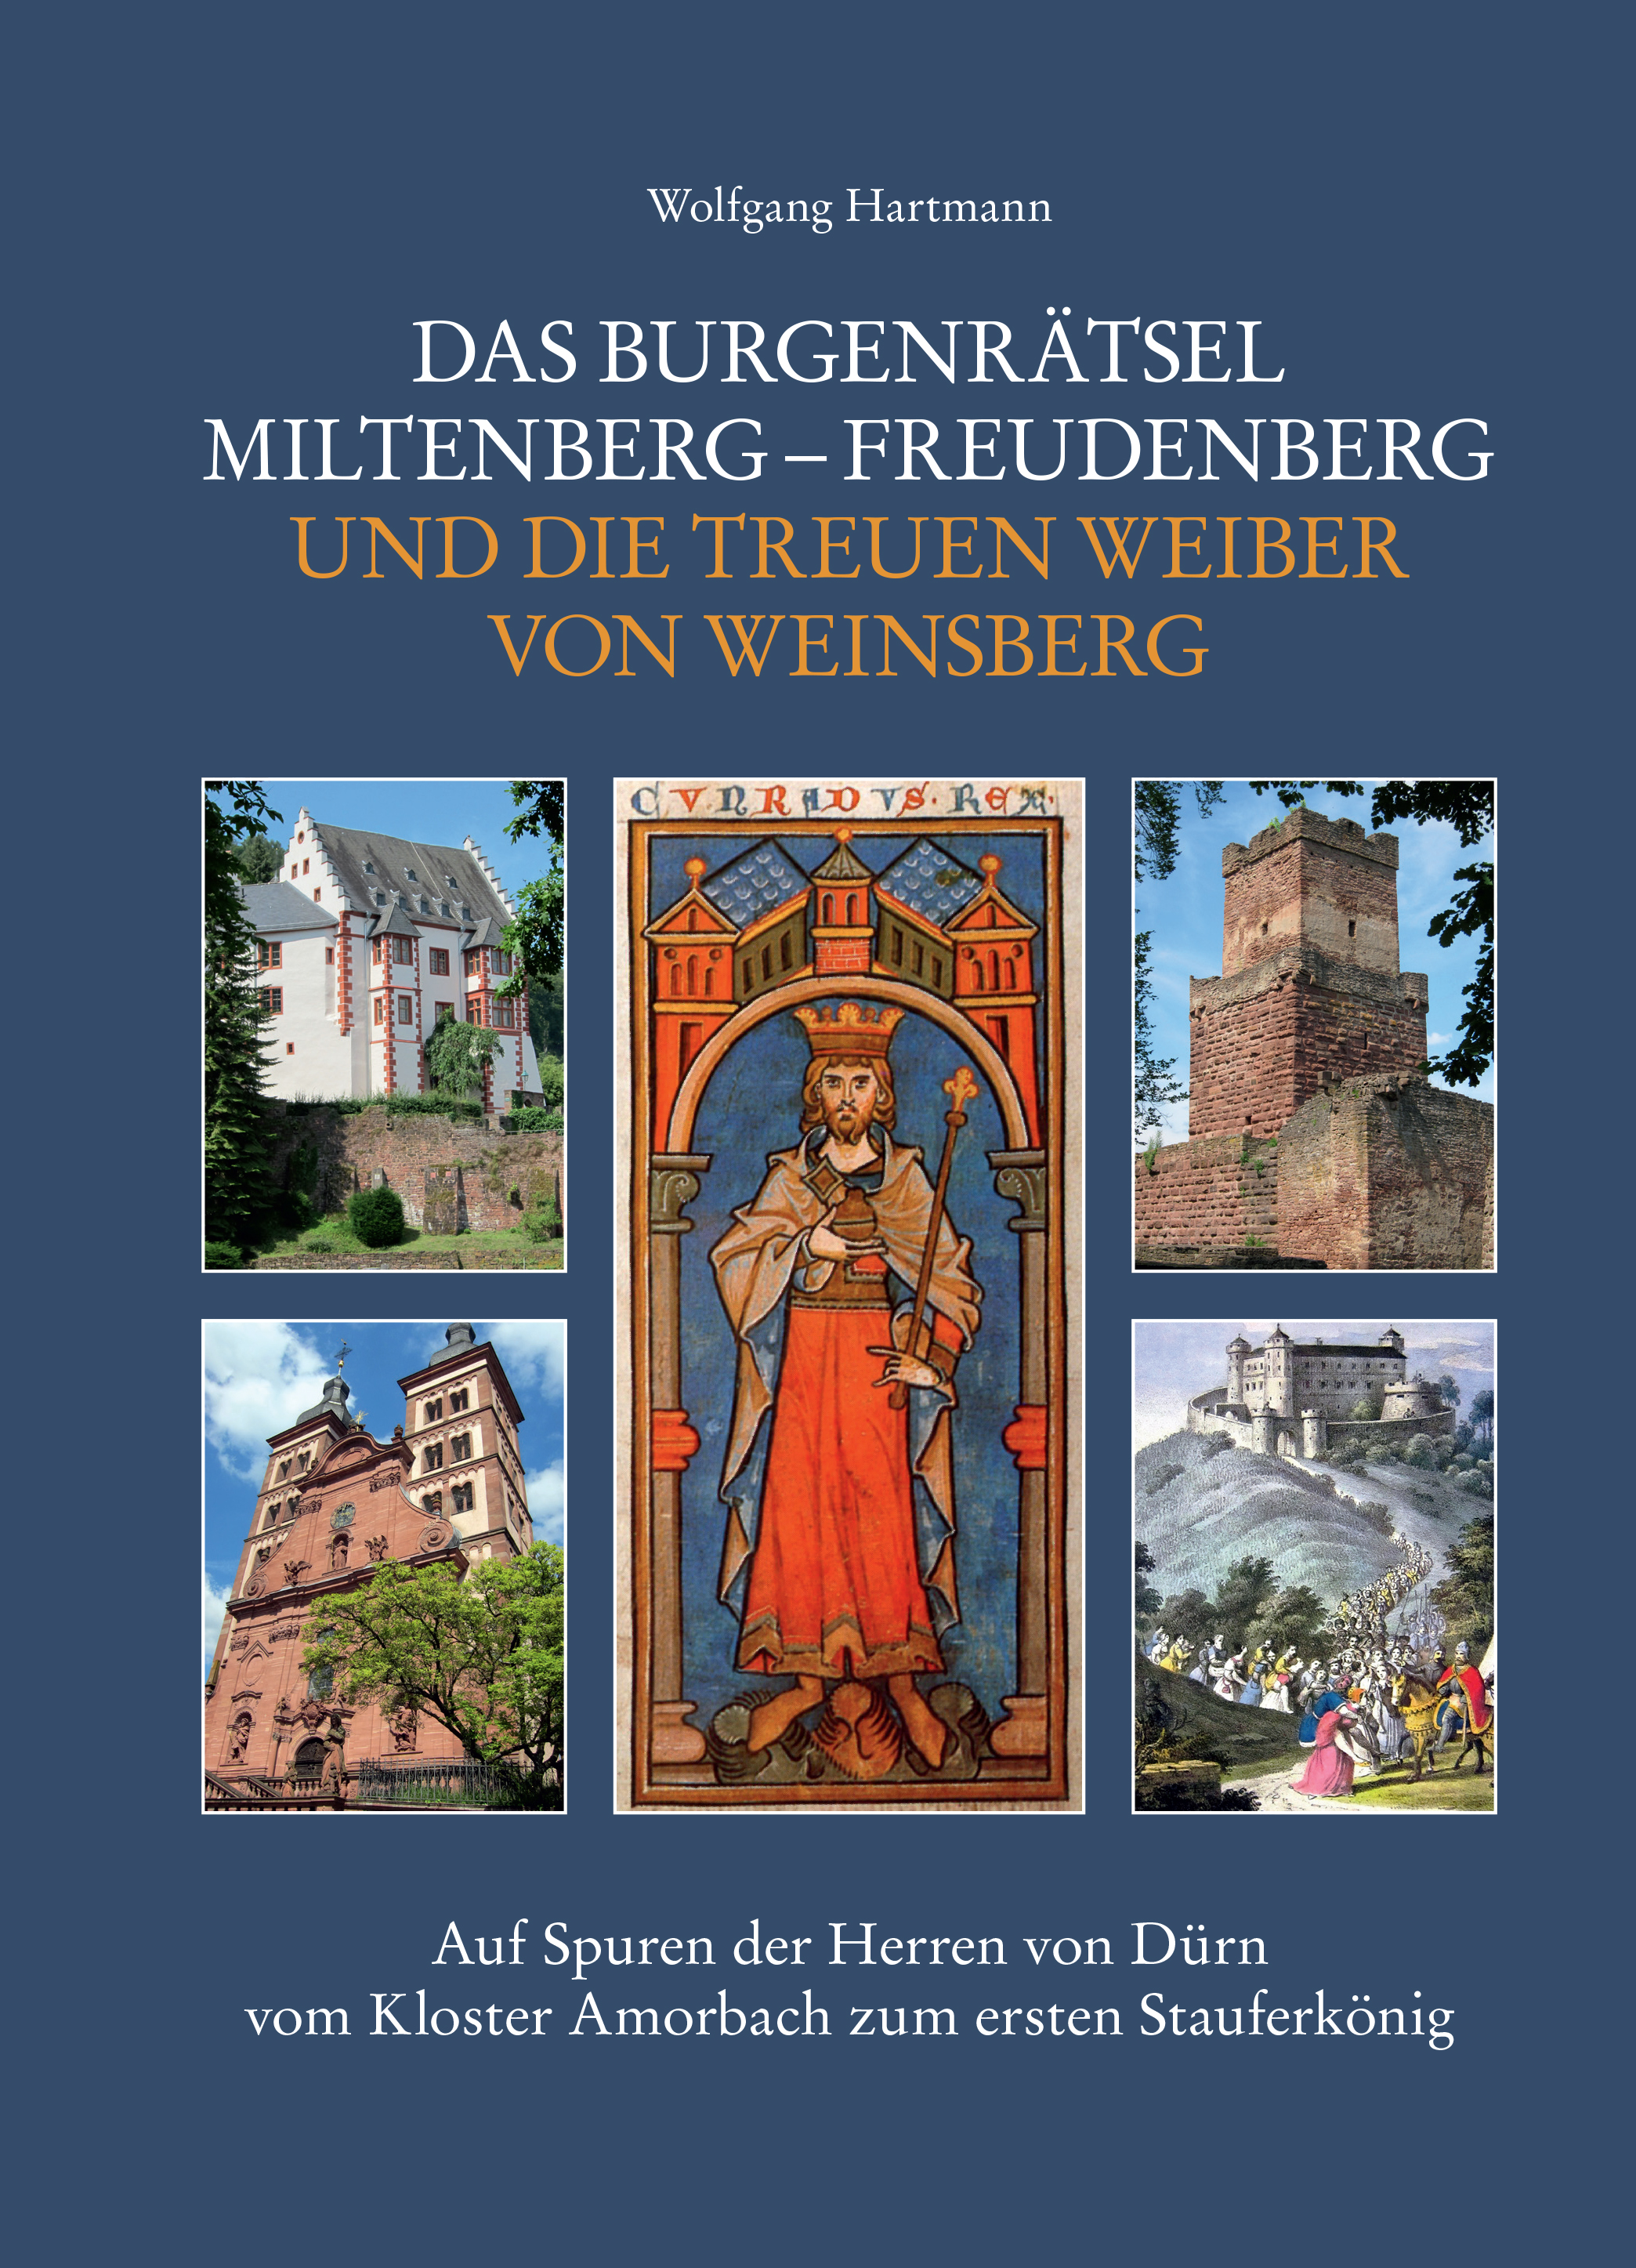 Das Burgenraetsel Miltenberg-Freudenberg und die treuen Weiber von Weinsberg Buch Vorderseite